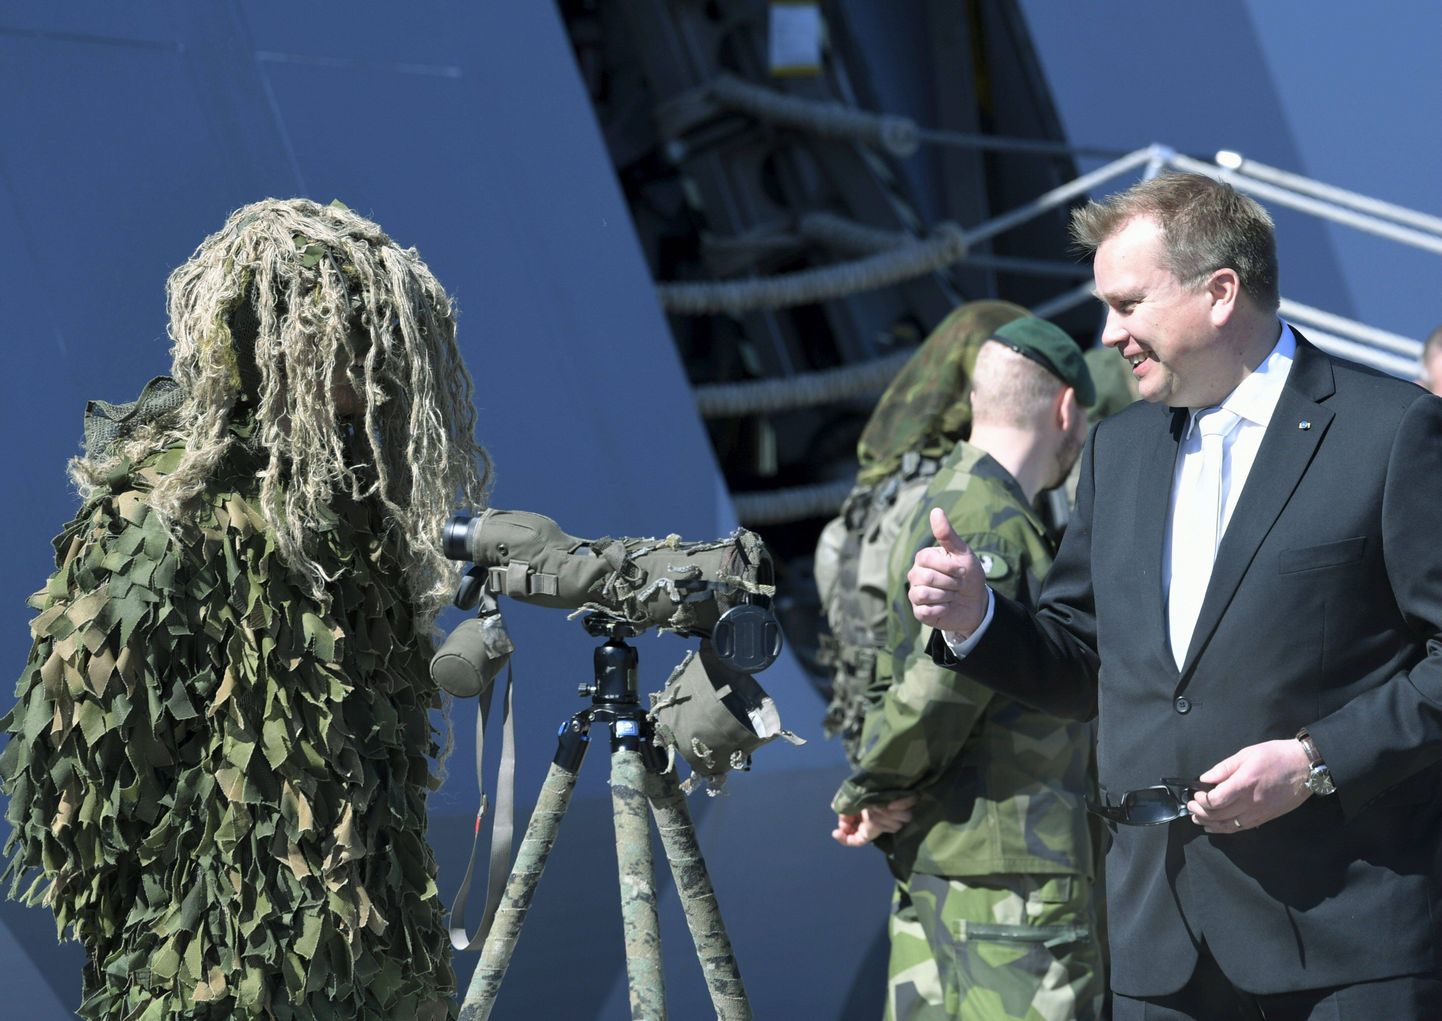 Soome kaitseminister Antti Kaikkonen külastamas Rootsi Berga mereväebaasi Stockholmis.